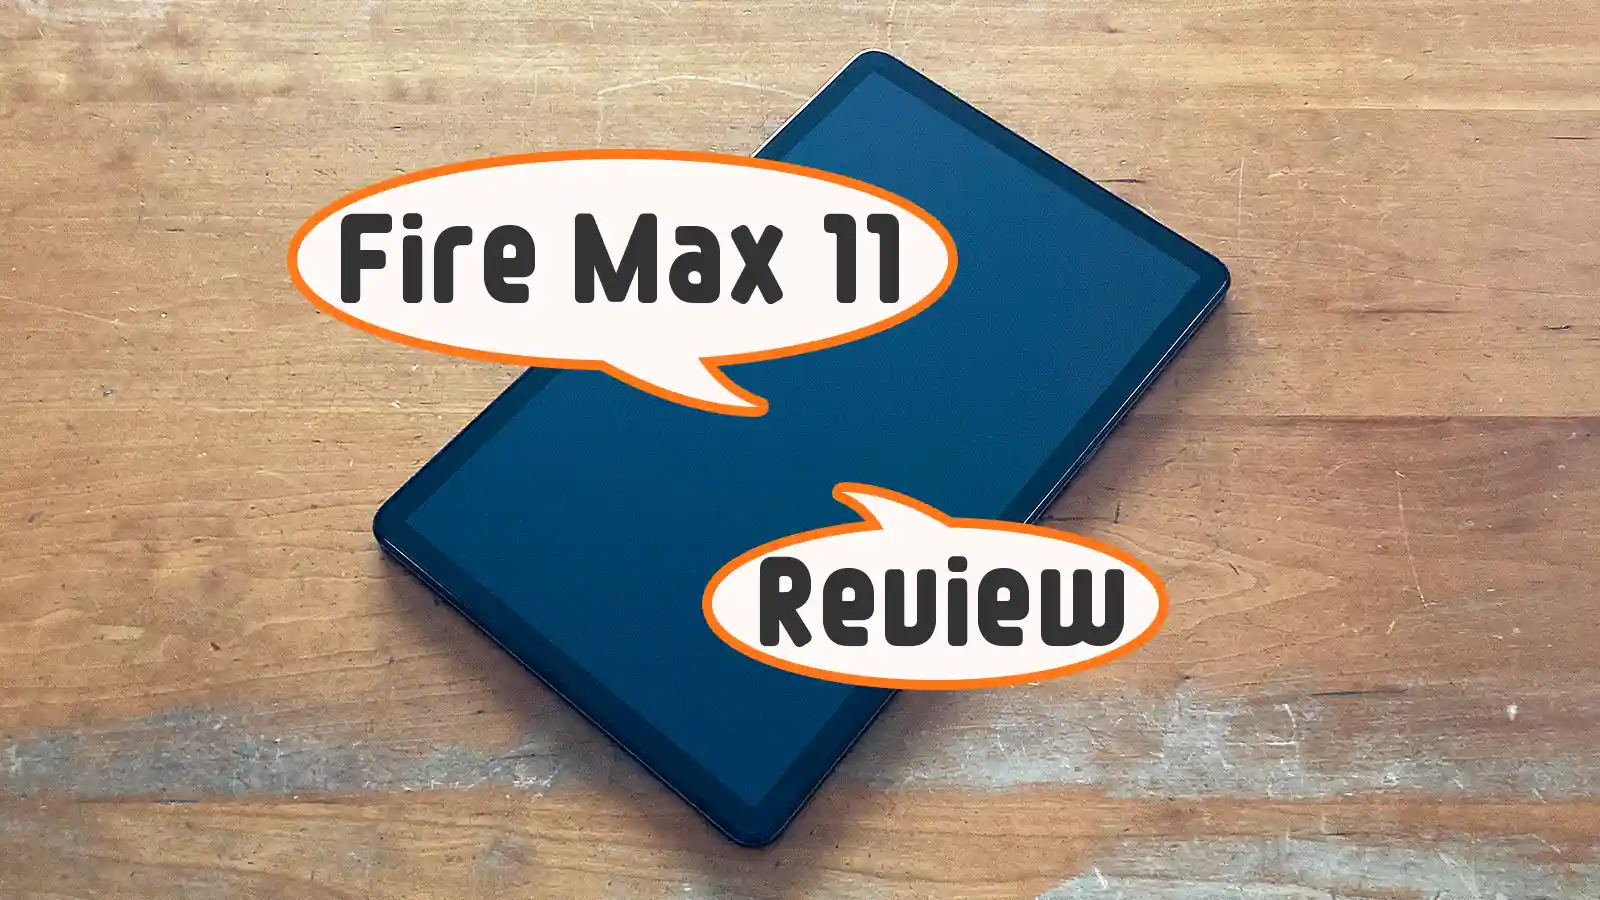 第13世代 2023年モデル】Fire Max 11 タブレット新旧モデル比較 